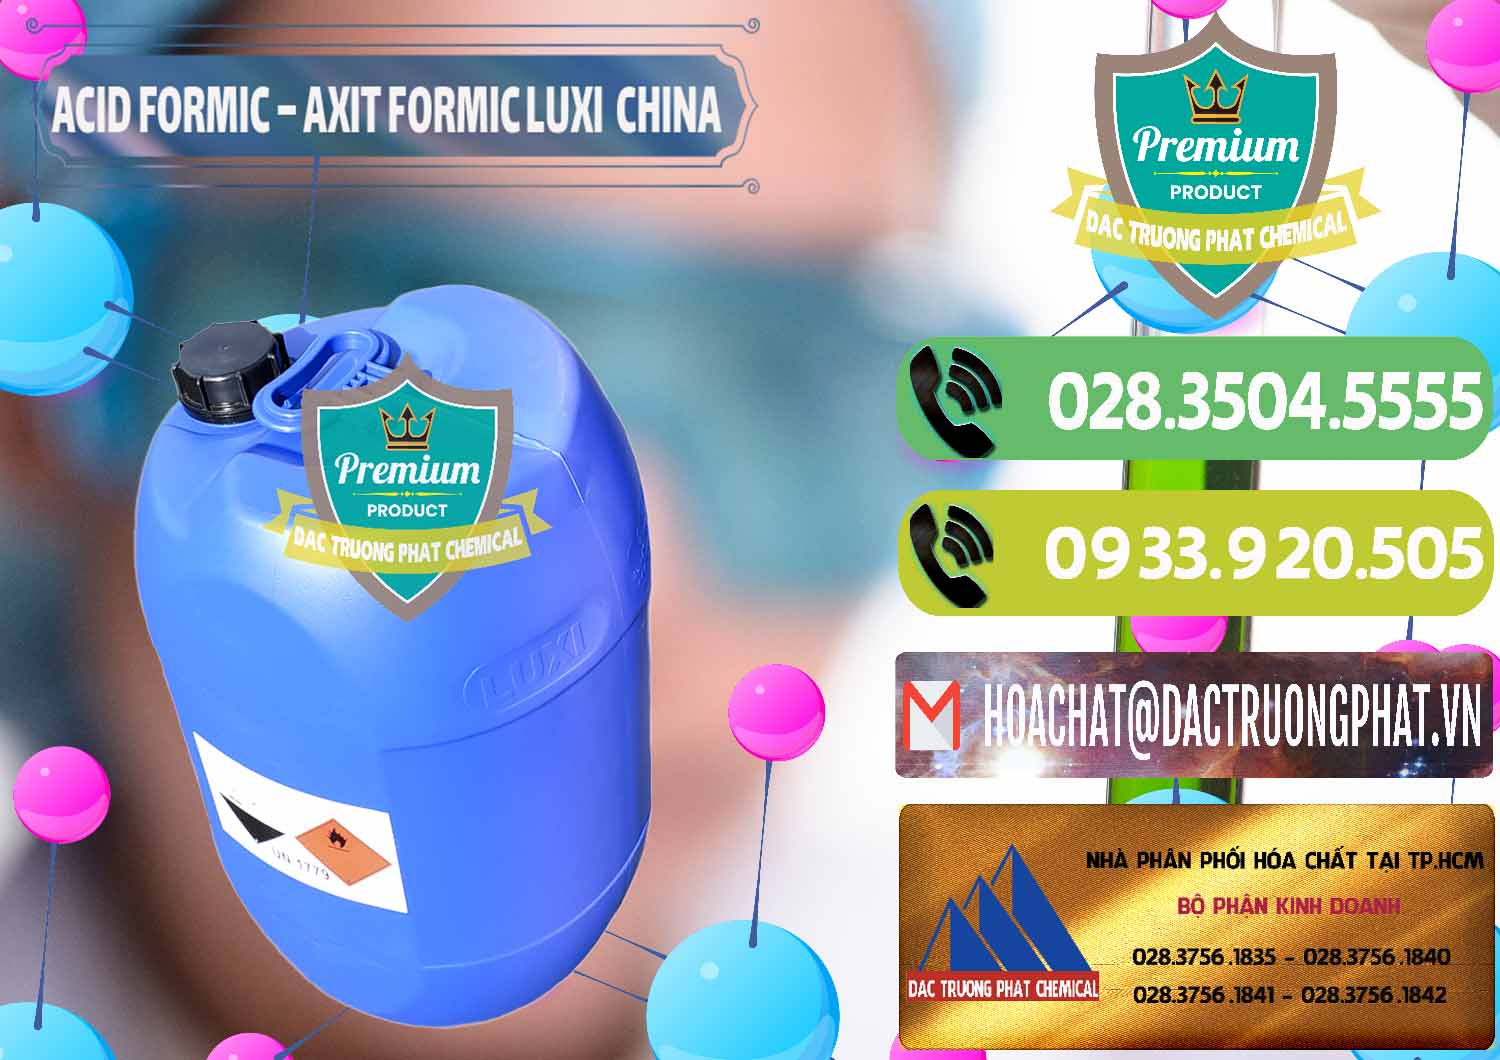 Chuyên cung ứng _ bán Acid Formic - Axit Formic Luxi Trung Quốc China - 0029 - Chuyên cung cấp - bán hóa chất tại TP.HCM - hoachatmientay.vn